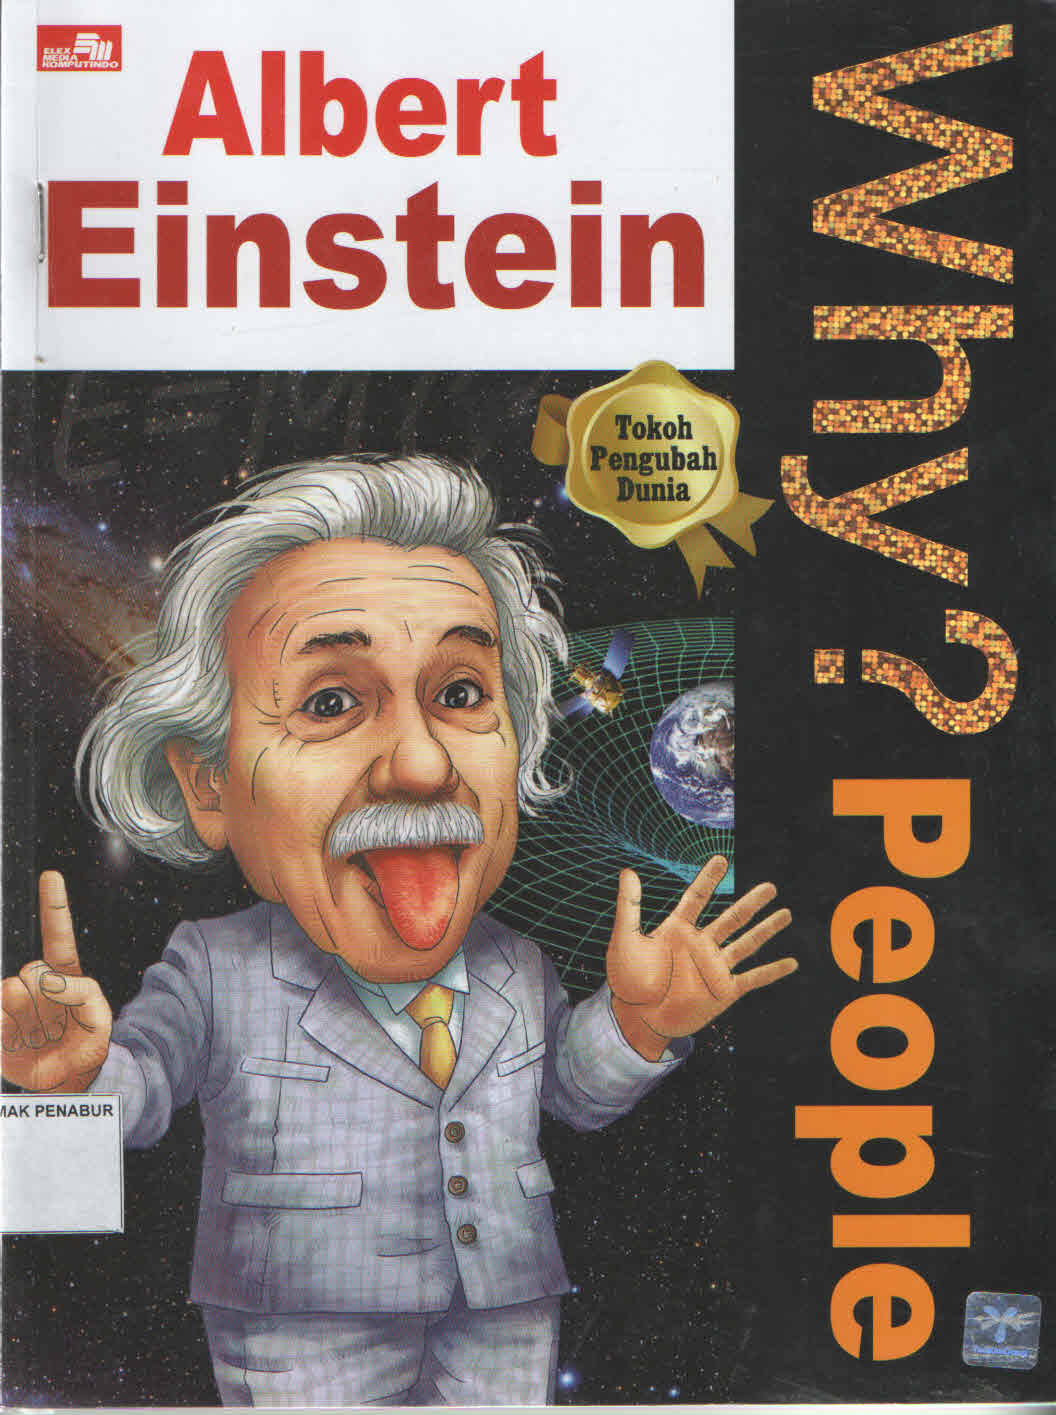 Why Poeple : Albert Einstein